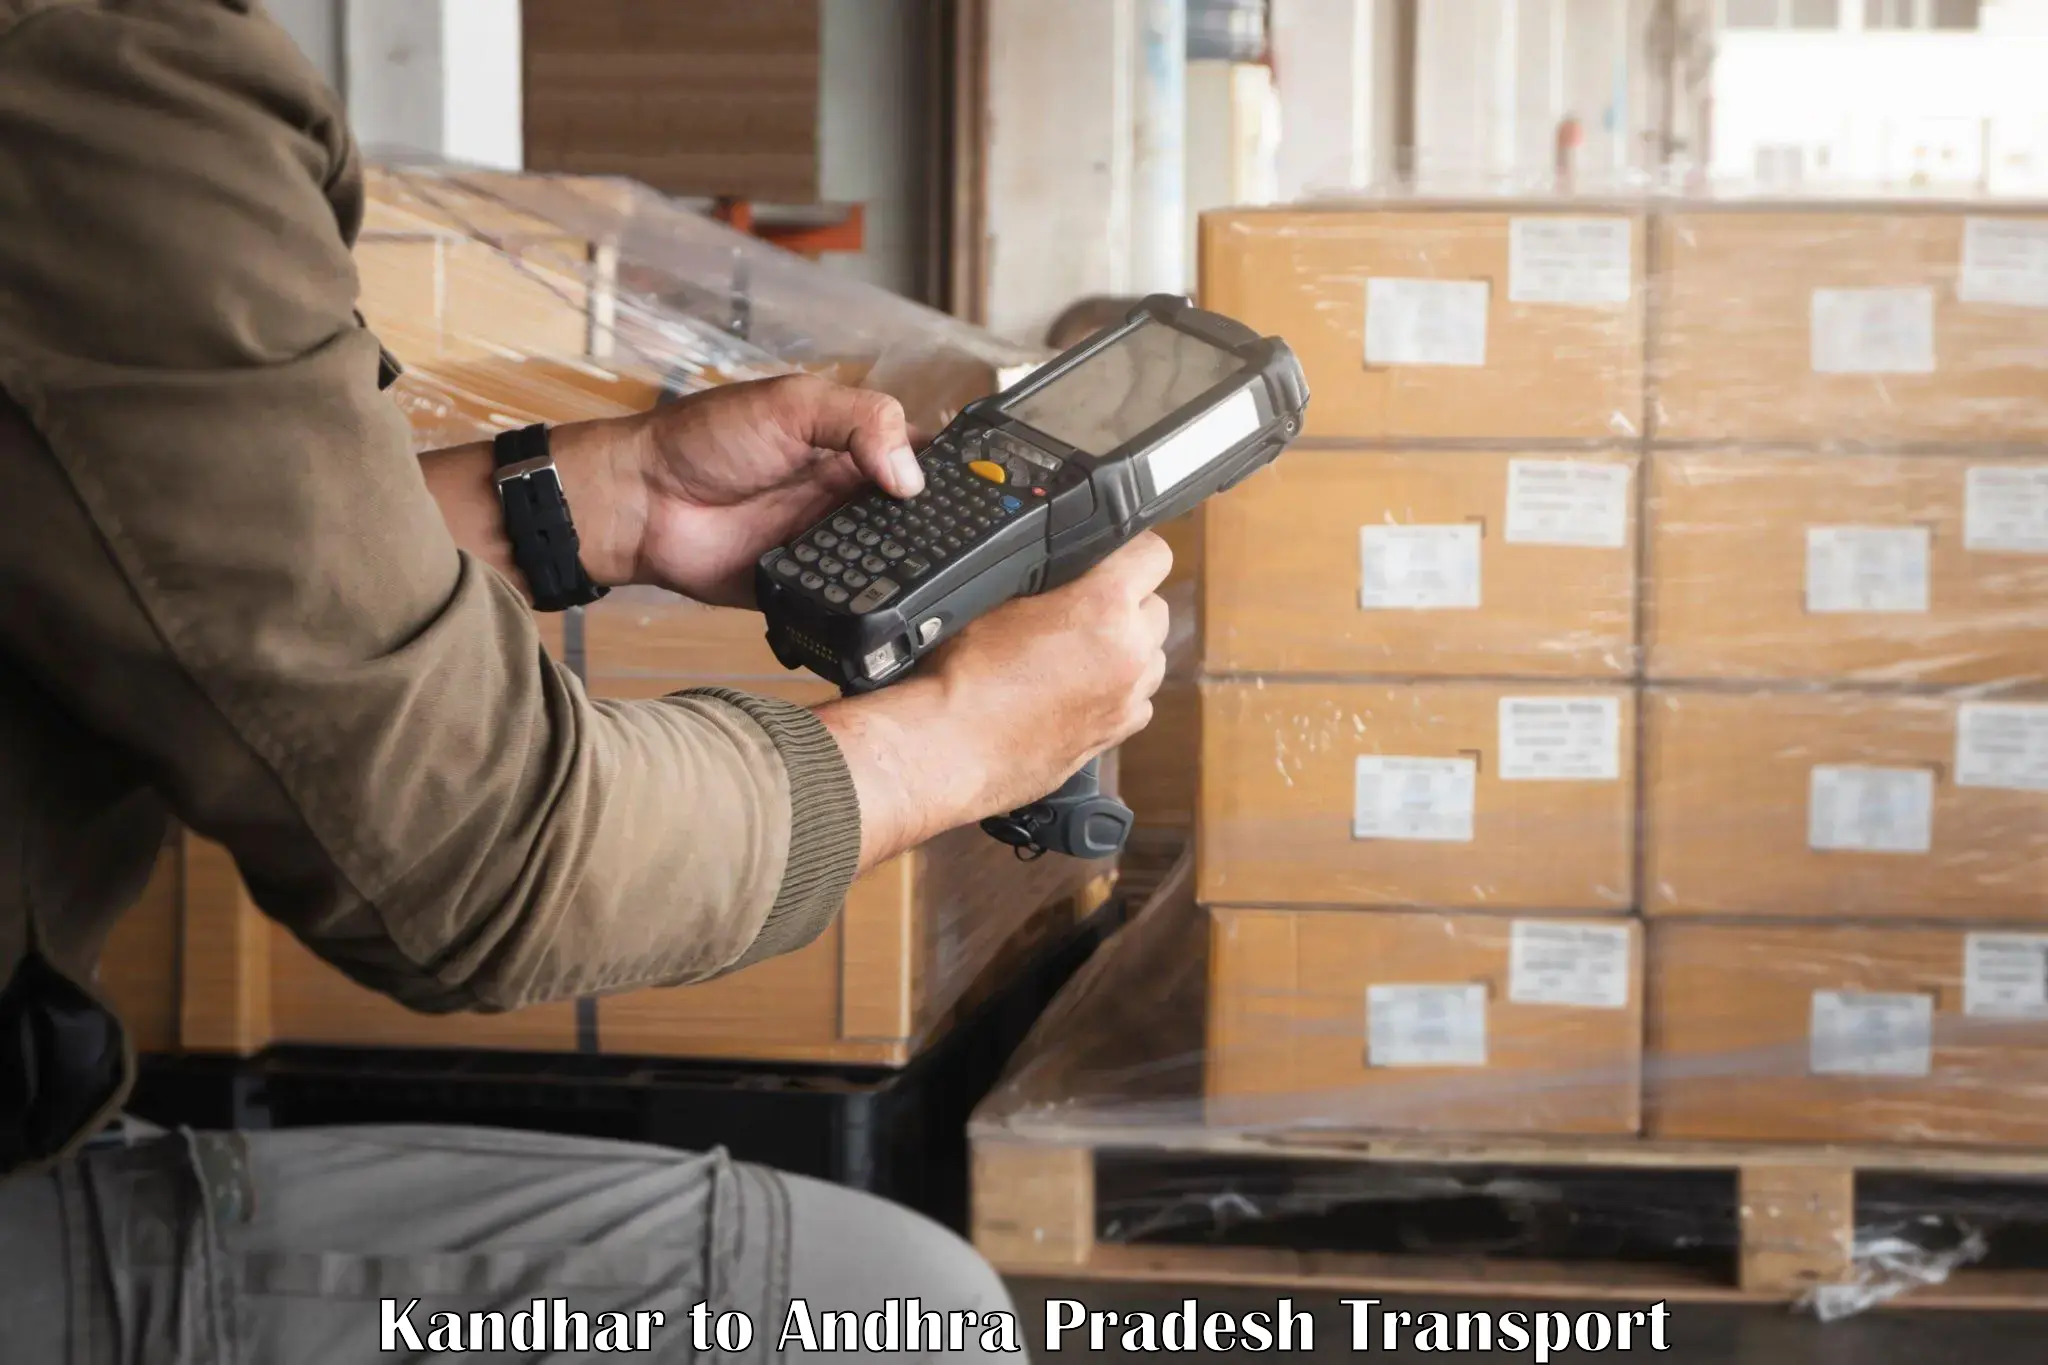 Shipping partner Kandhar to Rajam